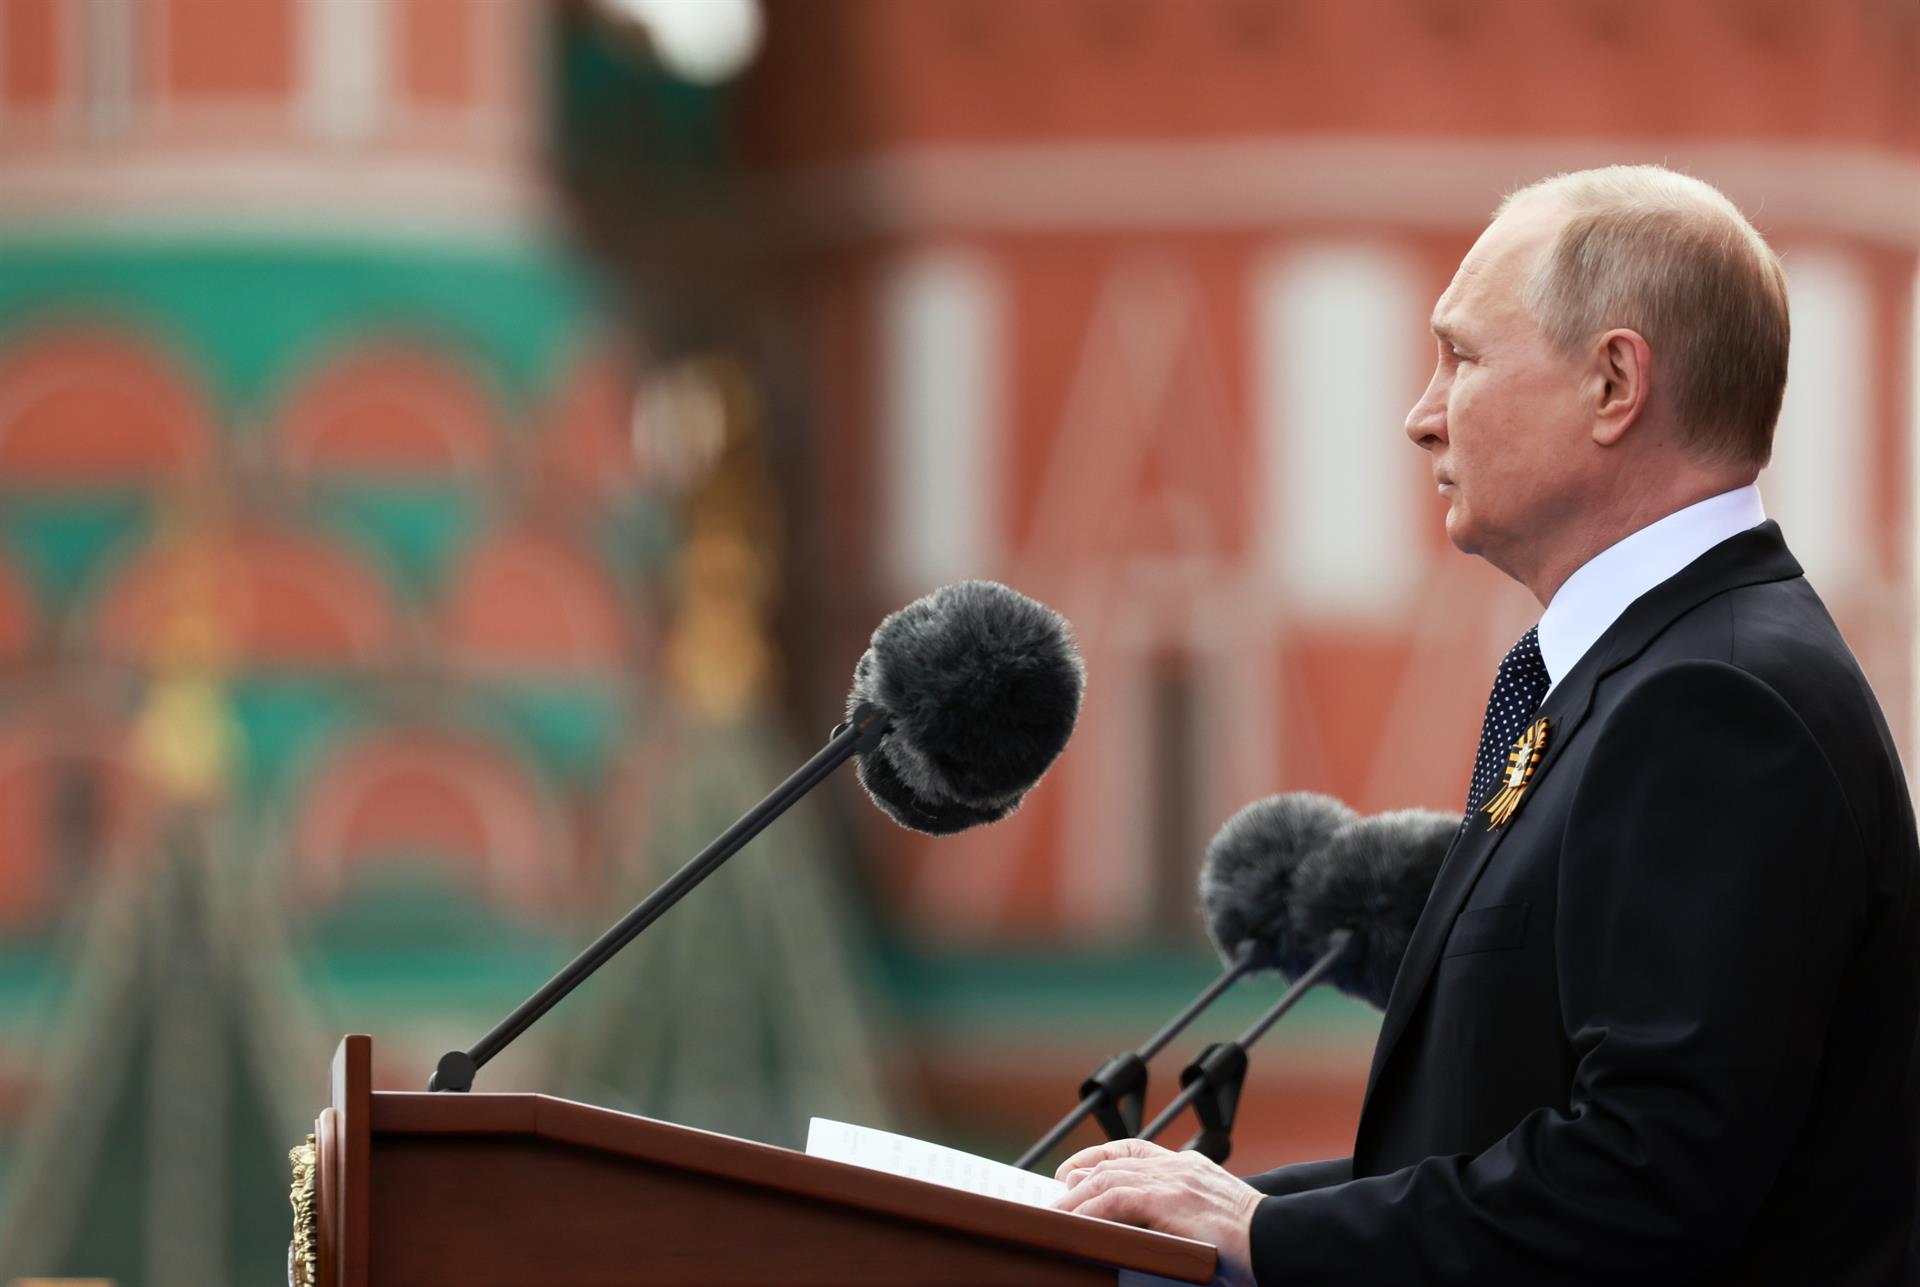 Putin acusa a Occidente de sacrificar a resto del mundo y crear crisis global